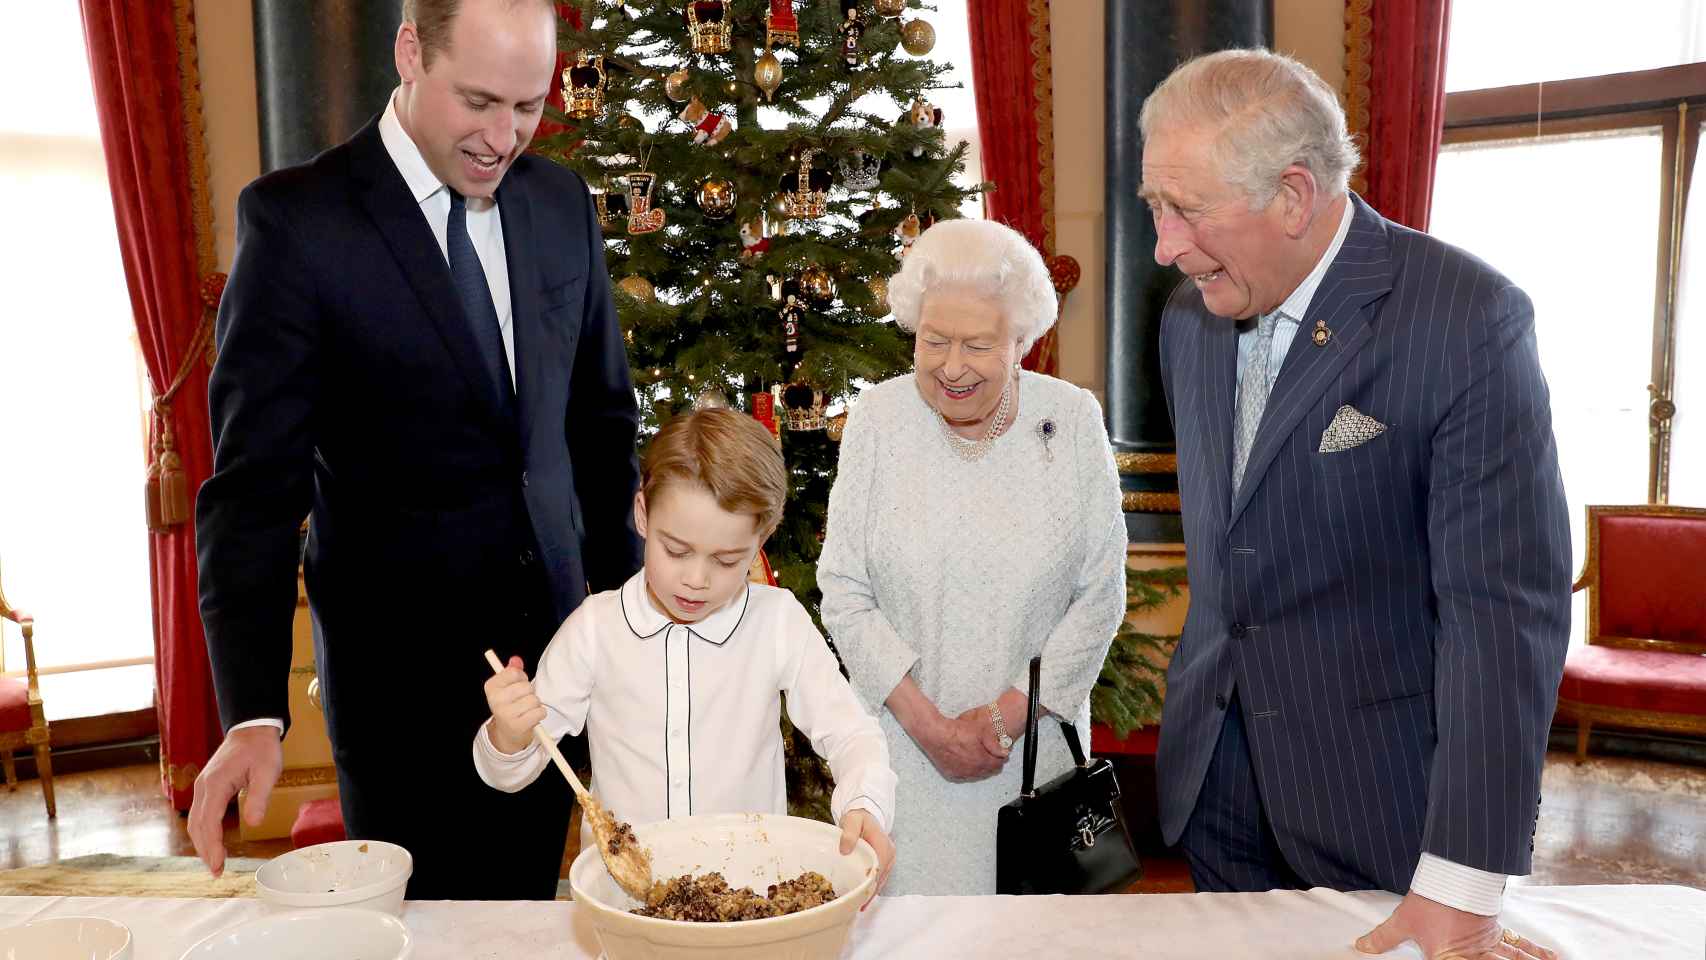 El príncipe George preparando una receta navideña con el príncipe Guillermo, el príncipe Carlos y la reina Isabel II.